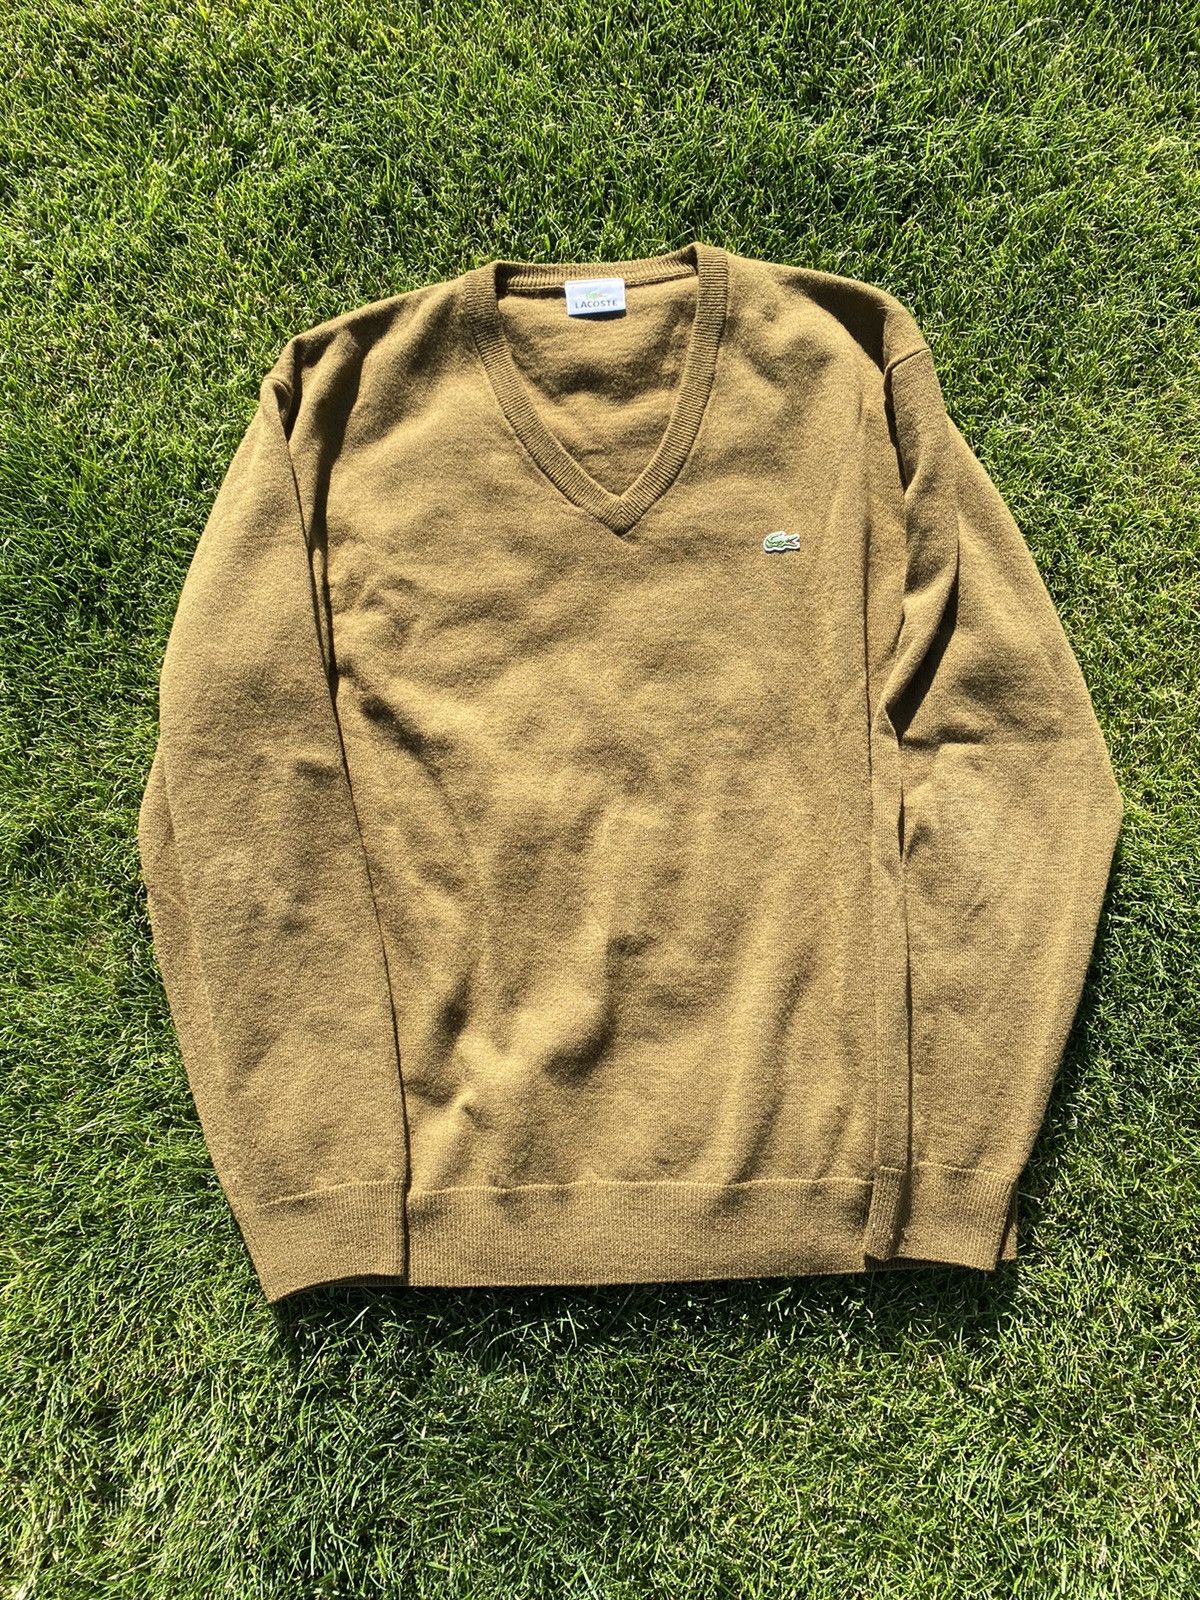 Lacoste Lacoste rare color sweater | Grailed